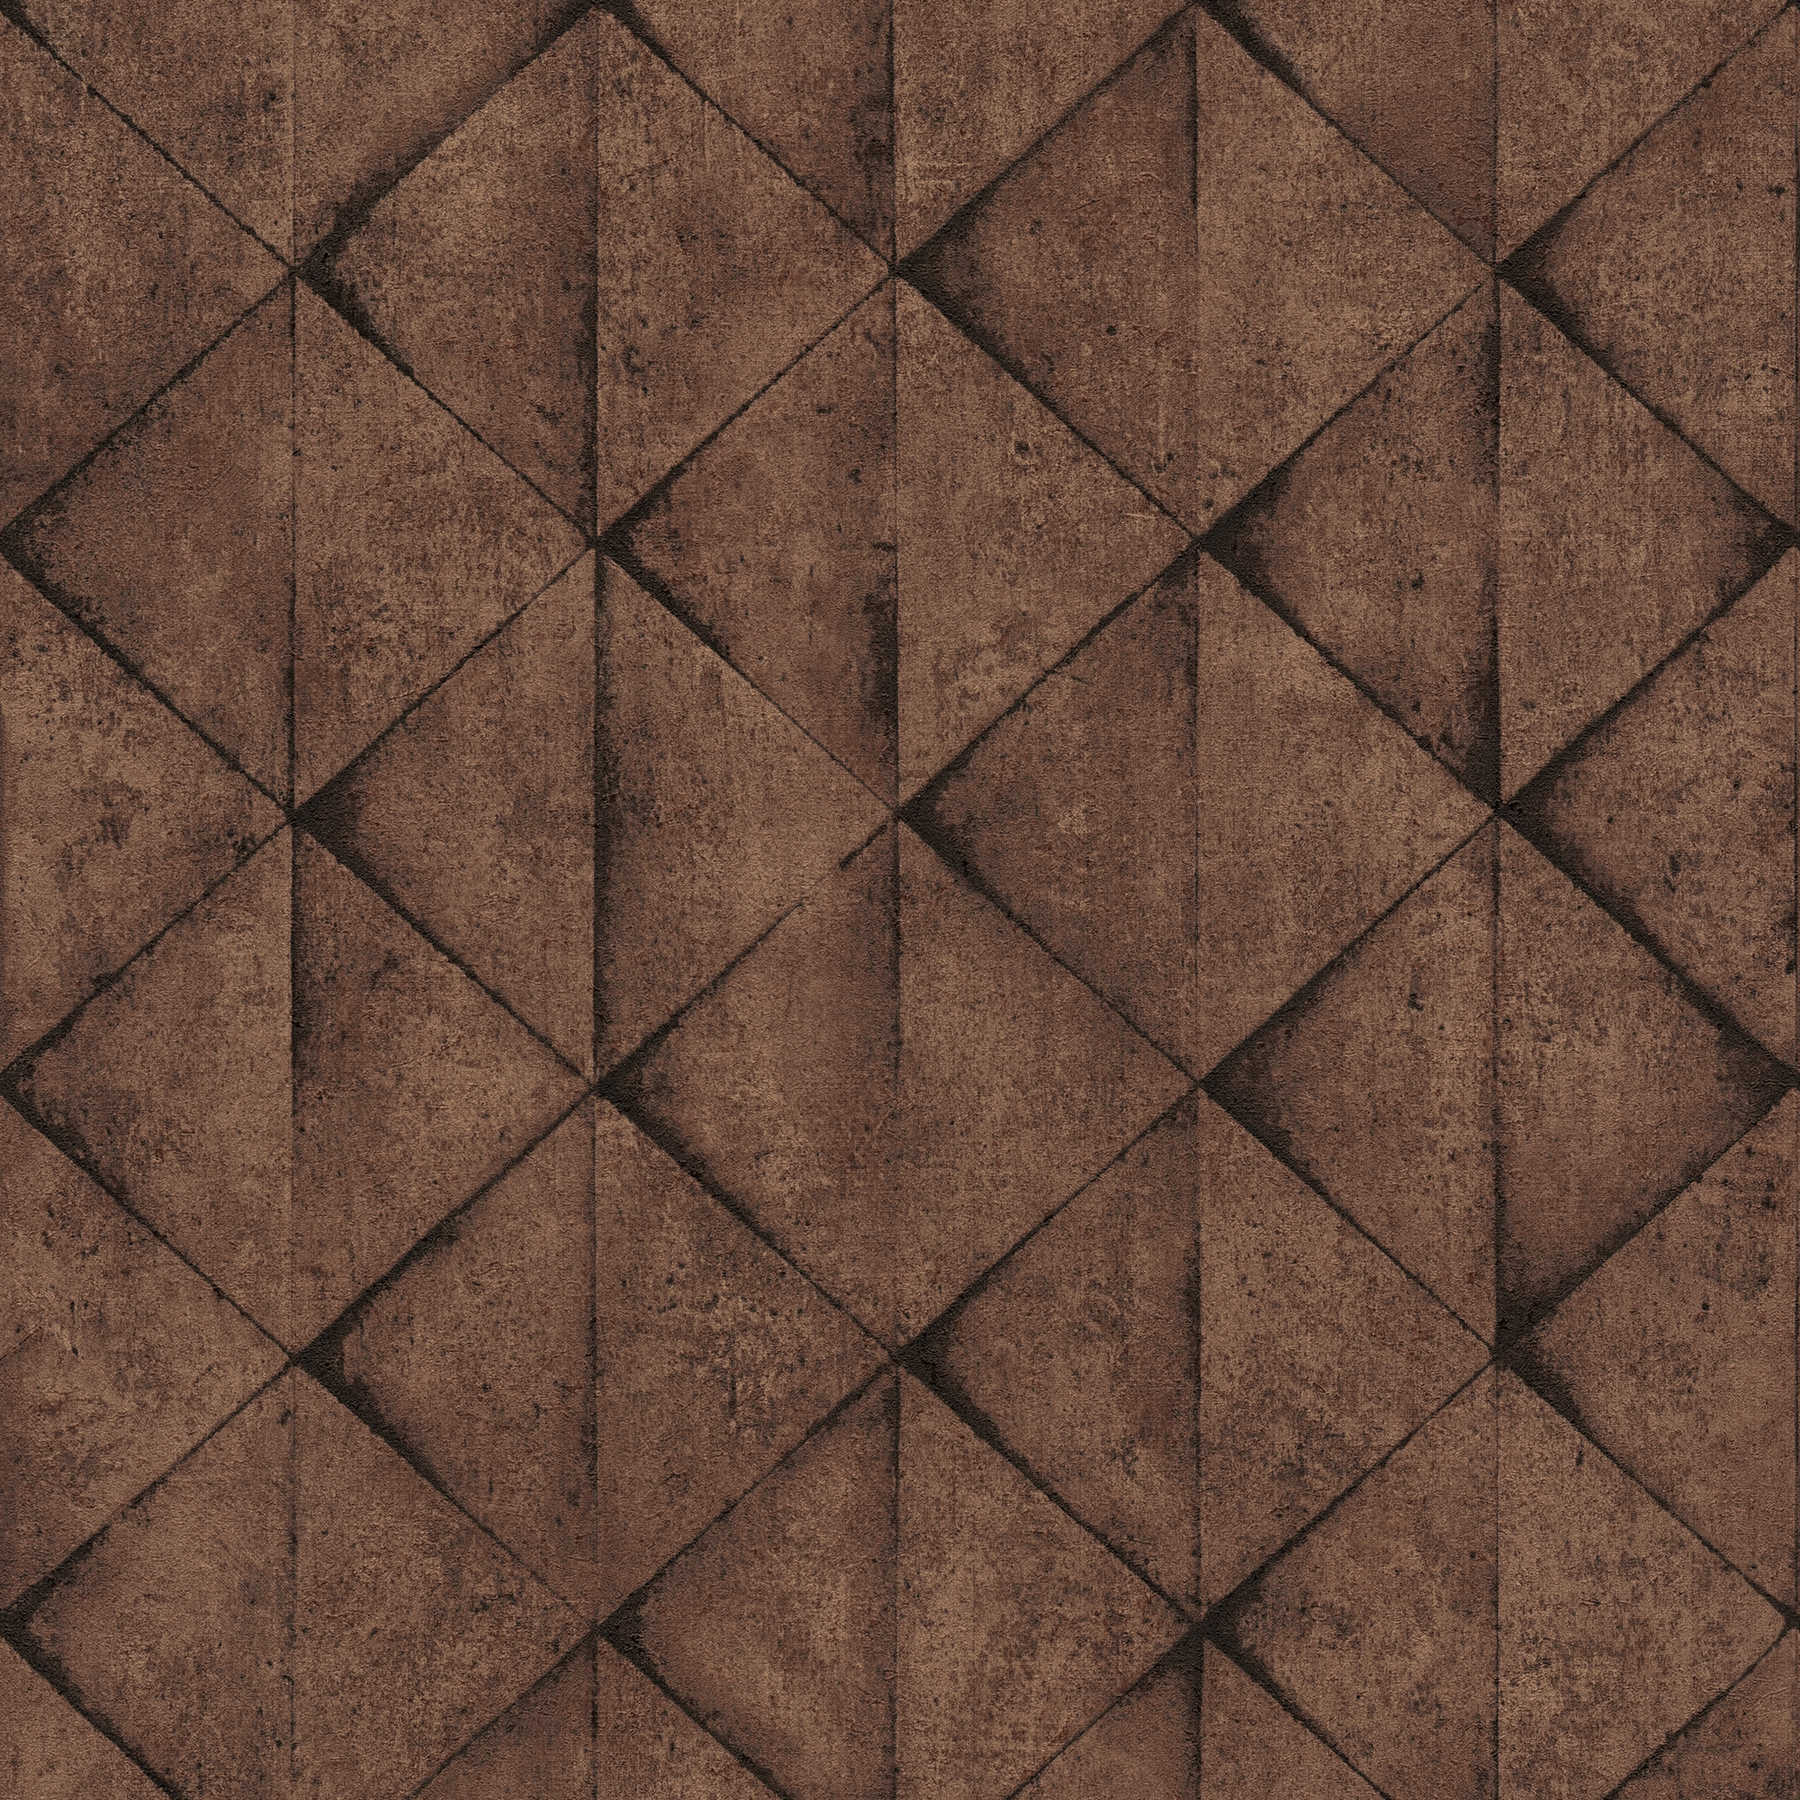 Wallpaper concrete look 3D tile design - brown, black
